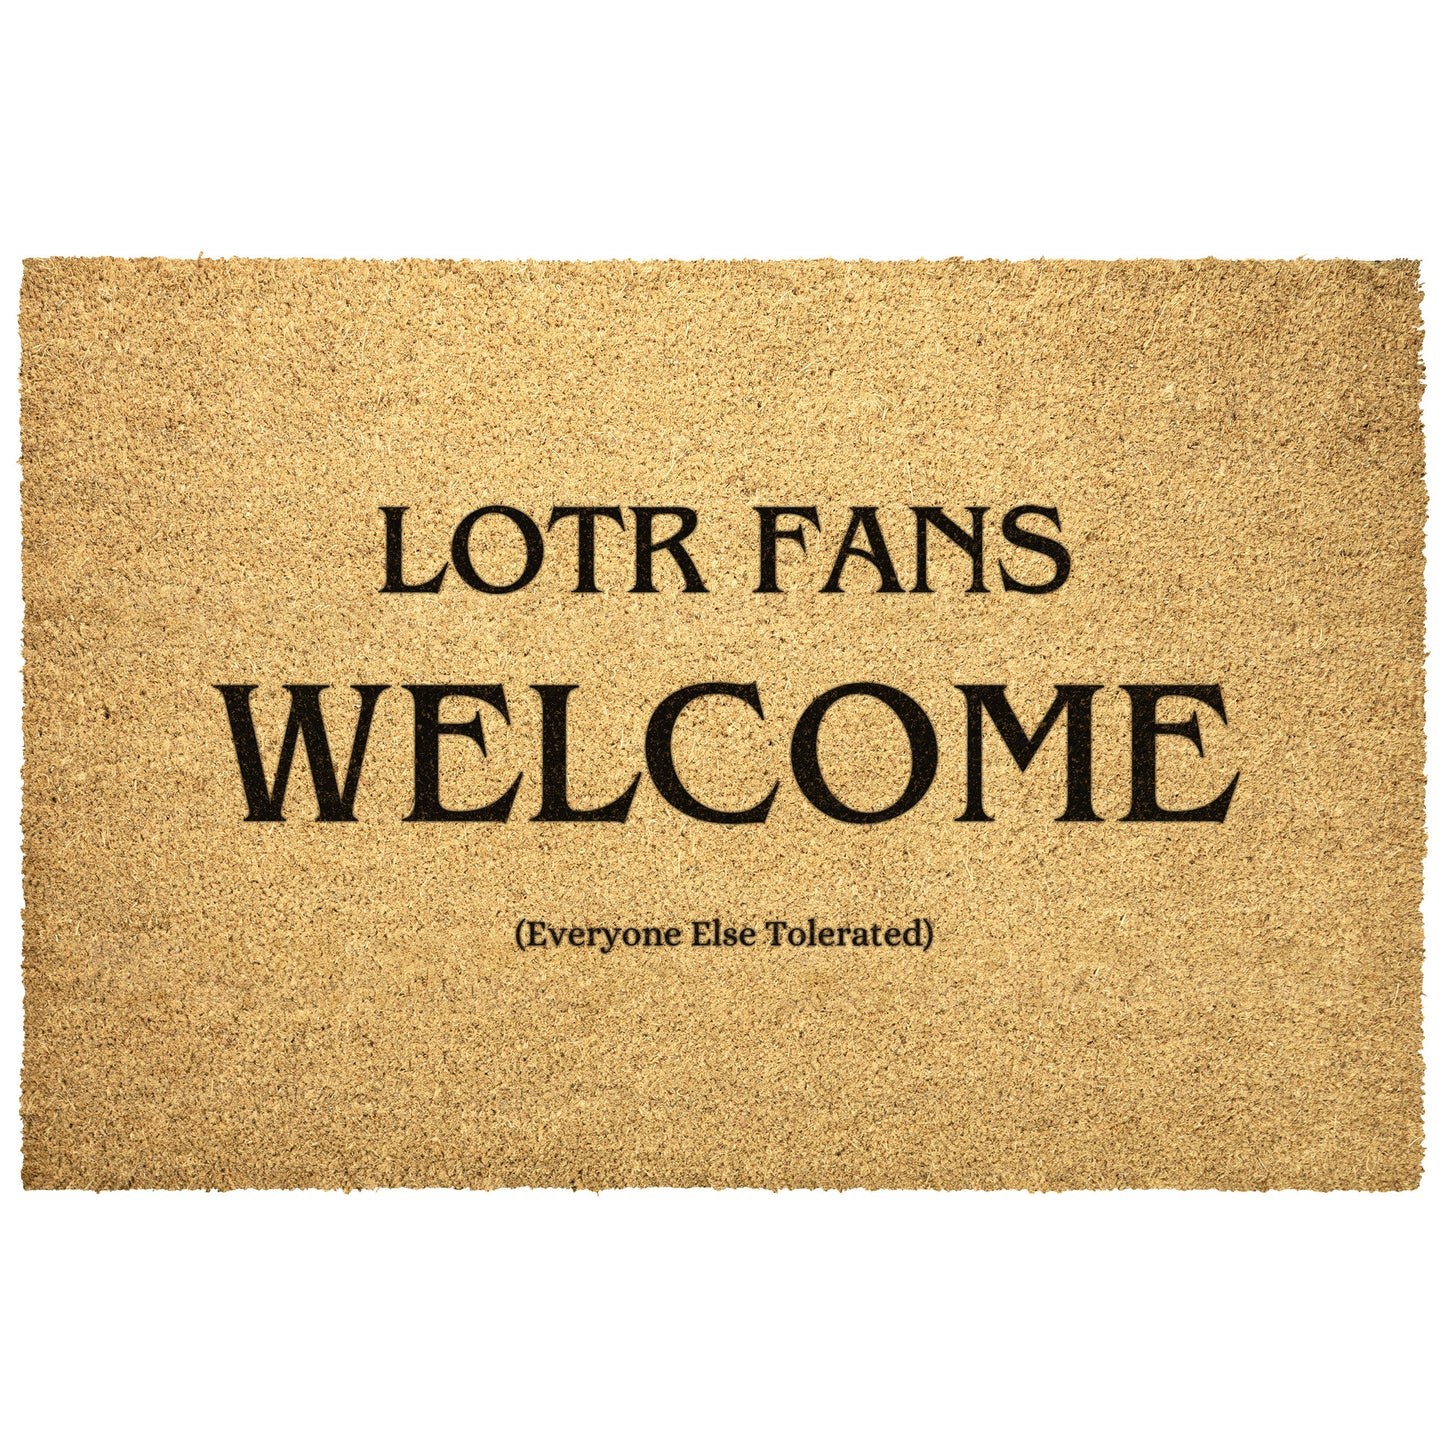 LOTR Fans Welcome - Door Mat